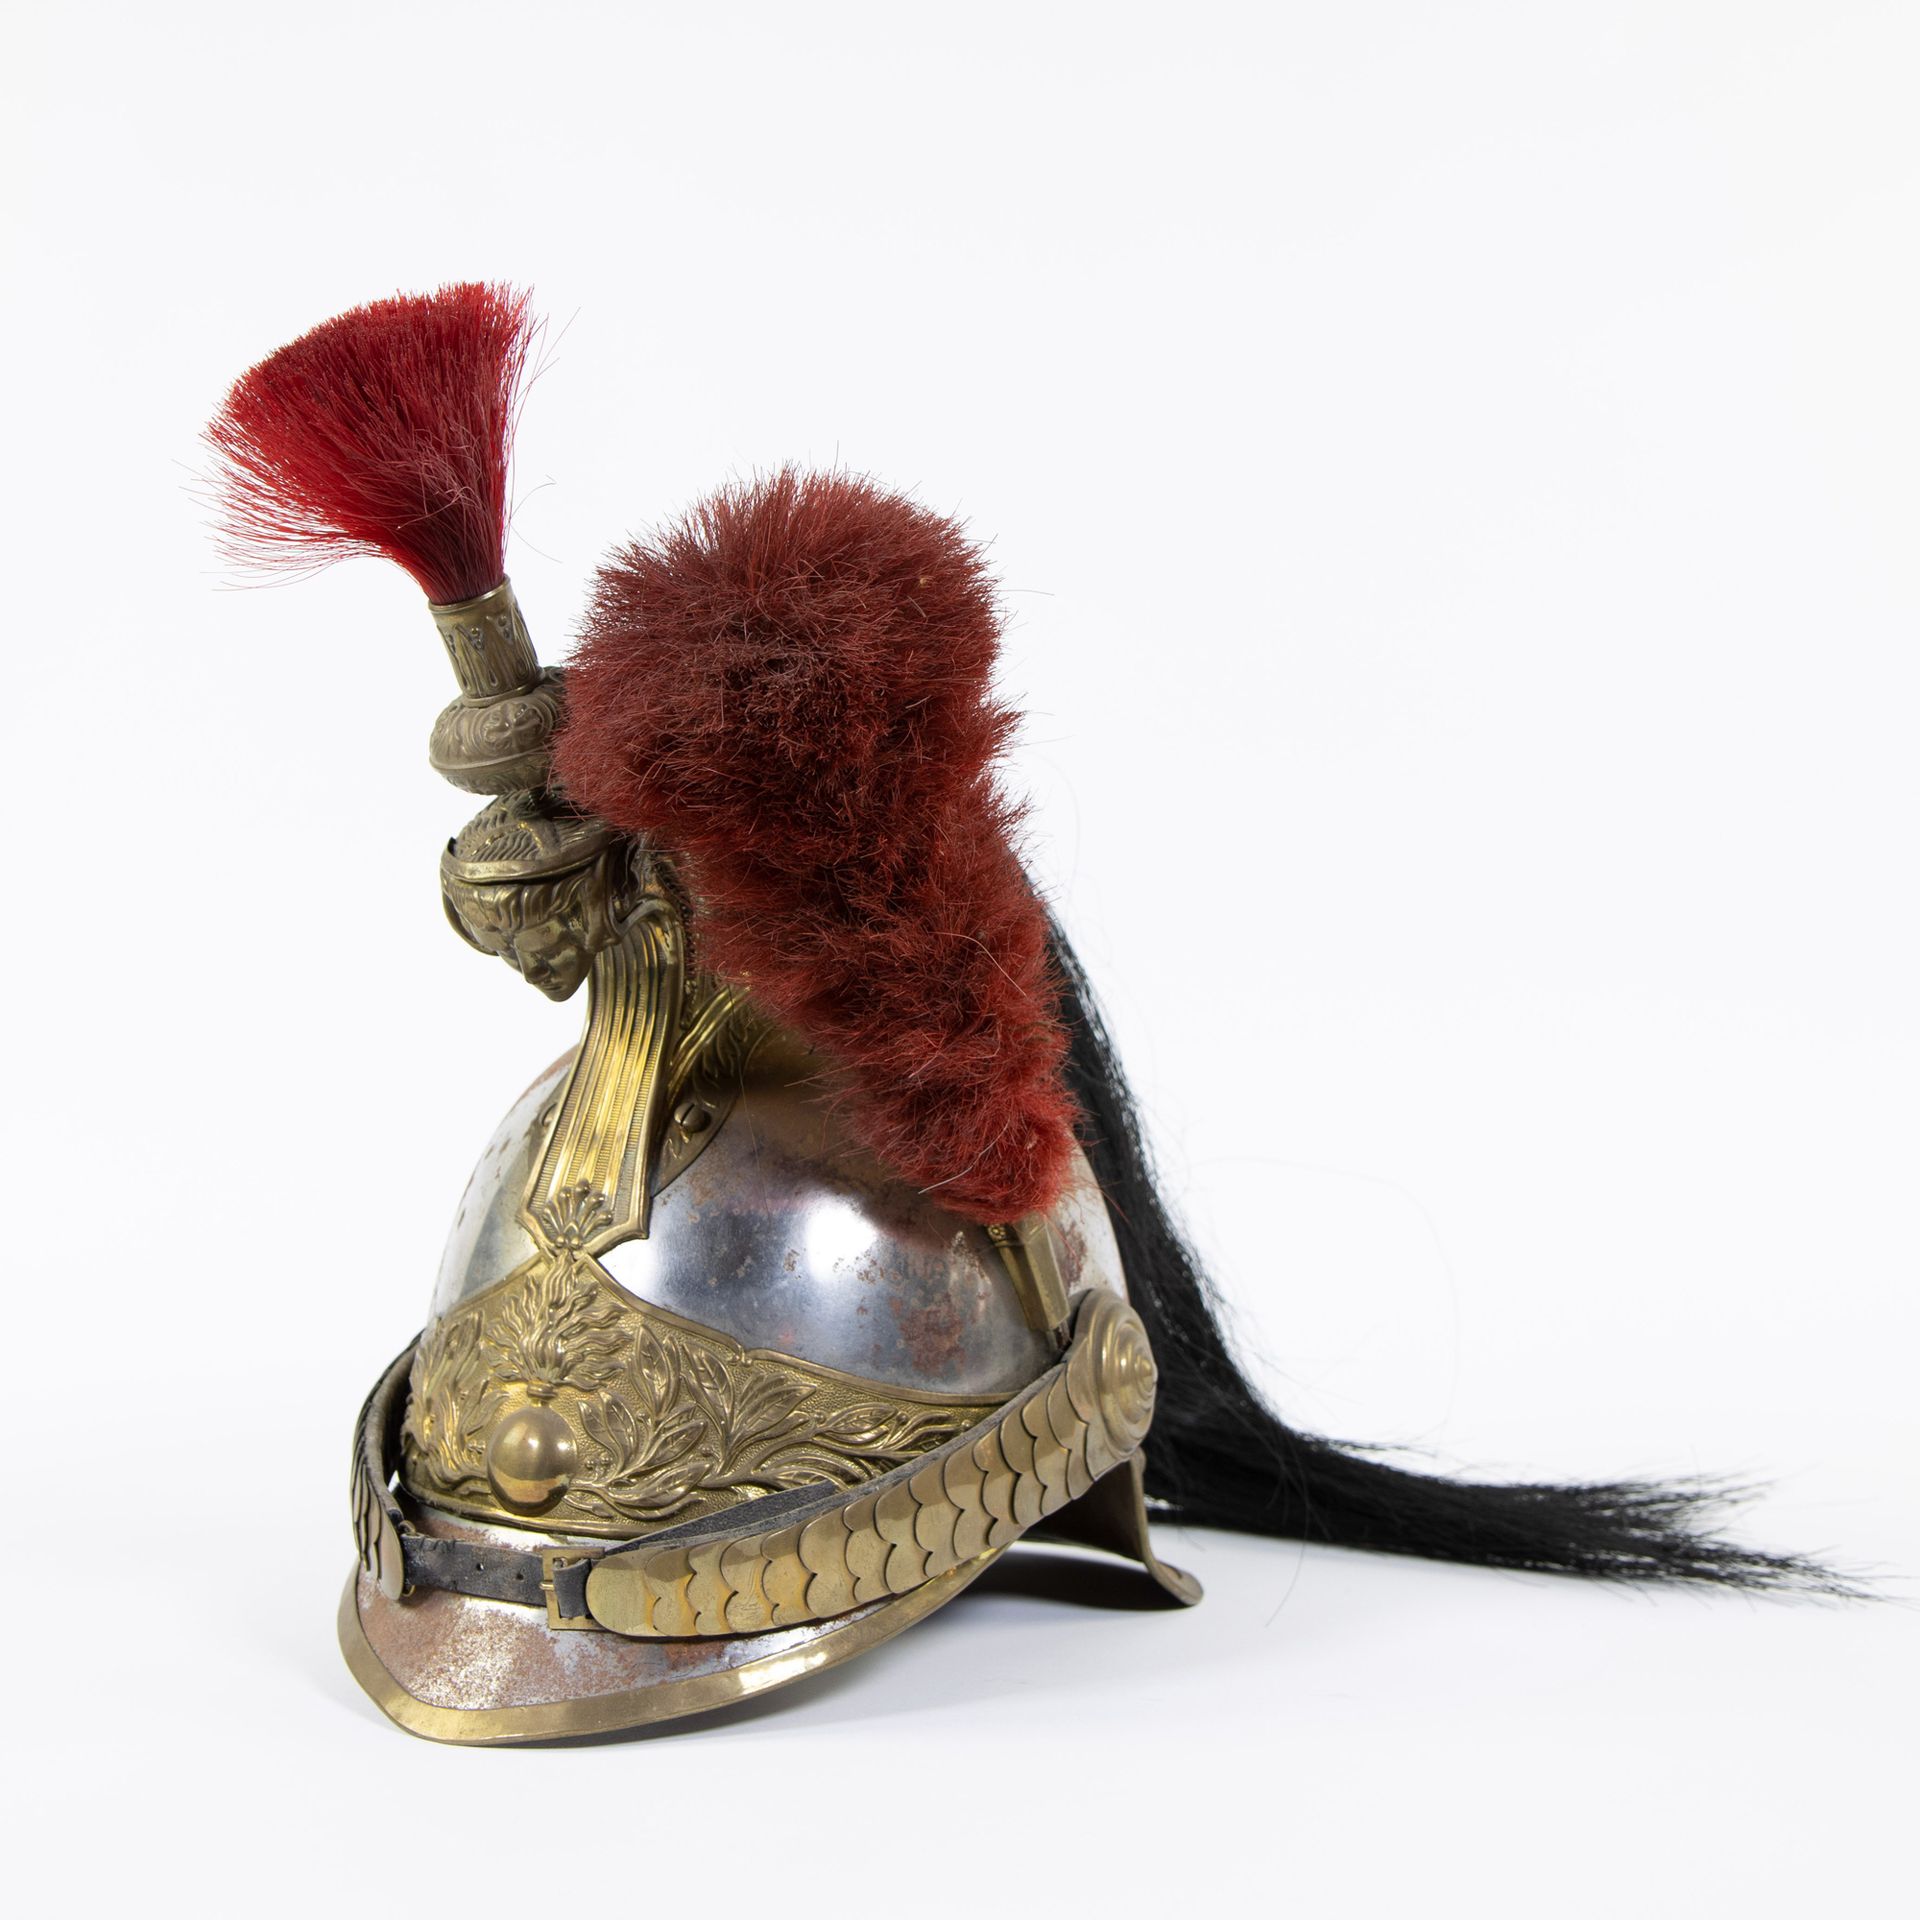 Null 皇家卫队魁尔斯头盔，法国，一战
皇家卫队贵族头盔，法国人，一战时
高42厘米